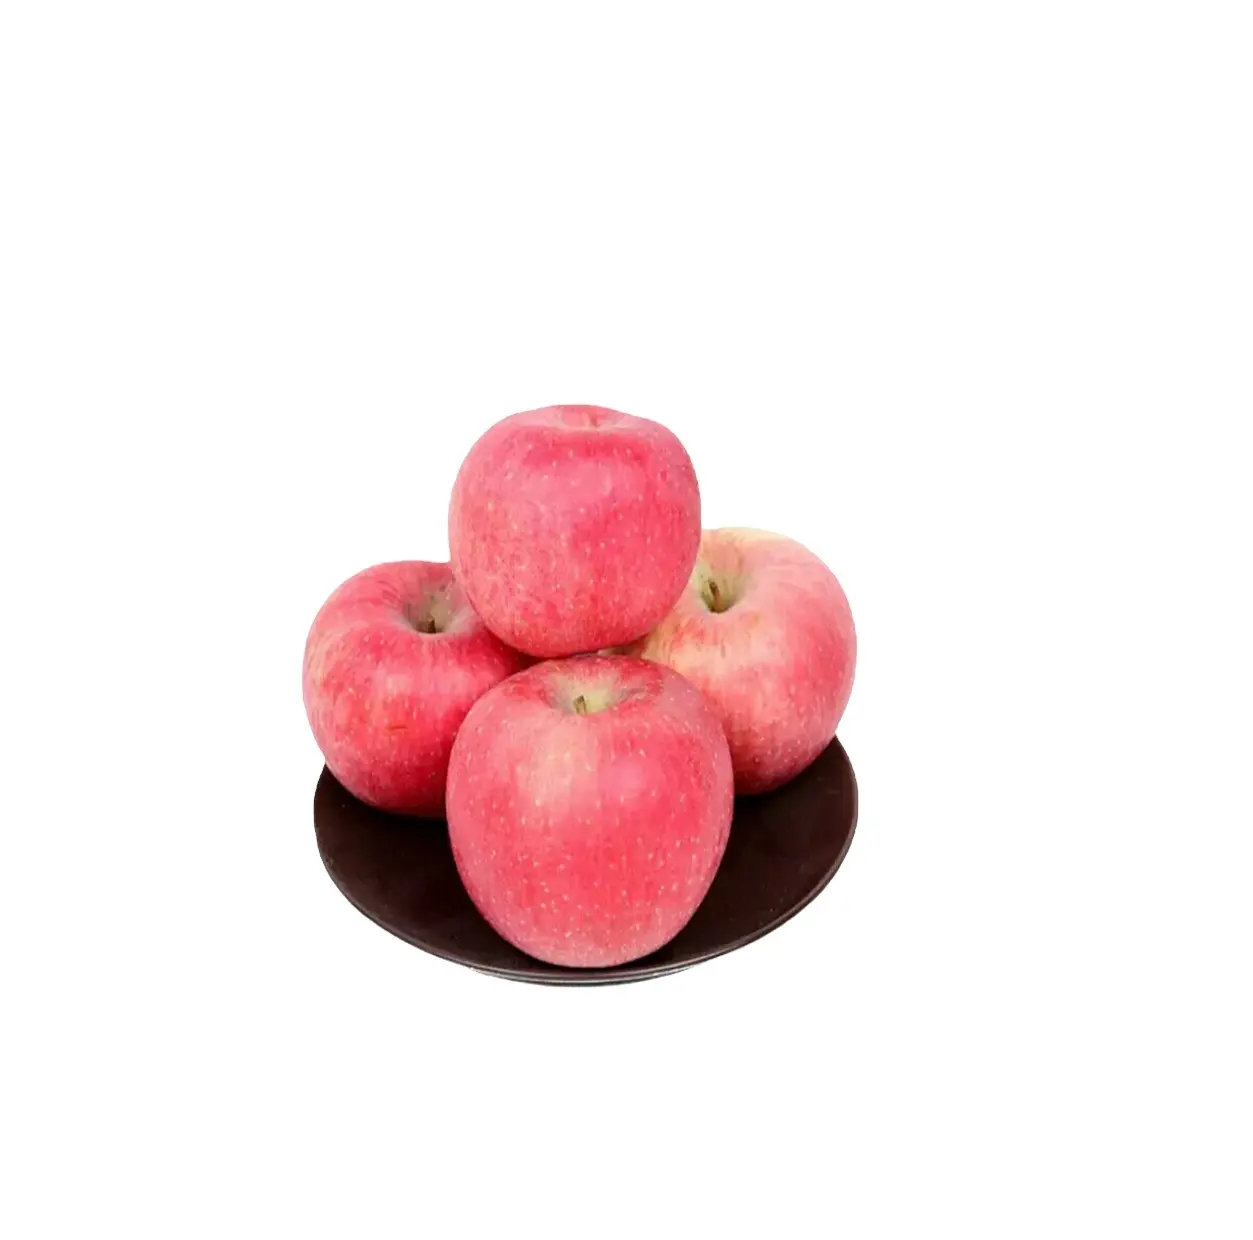 후지 애플 골든 갈라 레드 새로운 달콤한 스타일 유기 색상 무게 원산지 유형 과일 다양한 판매